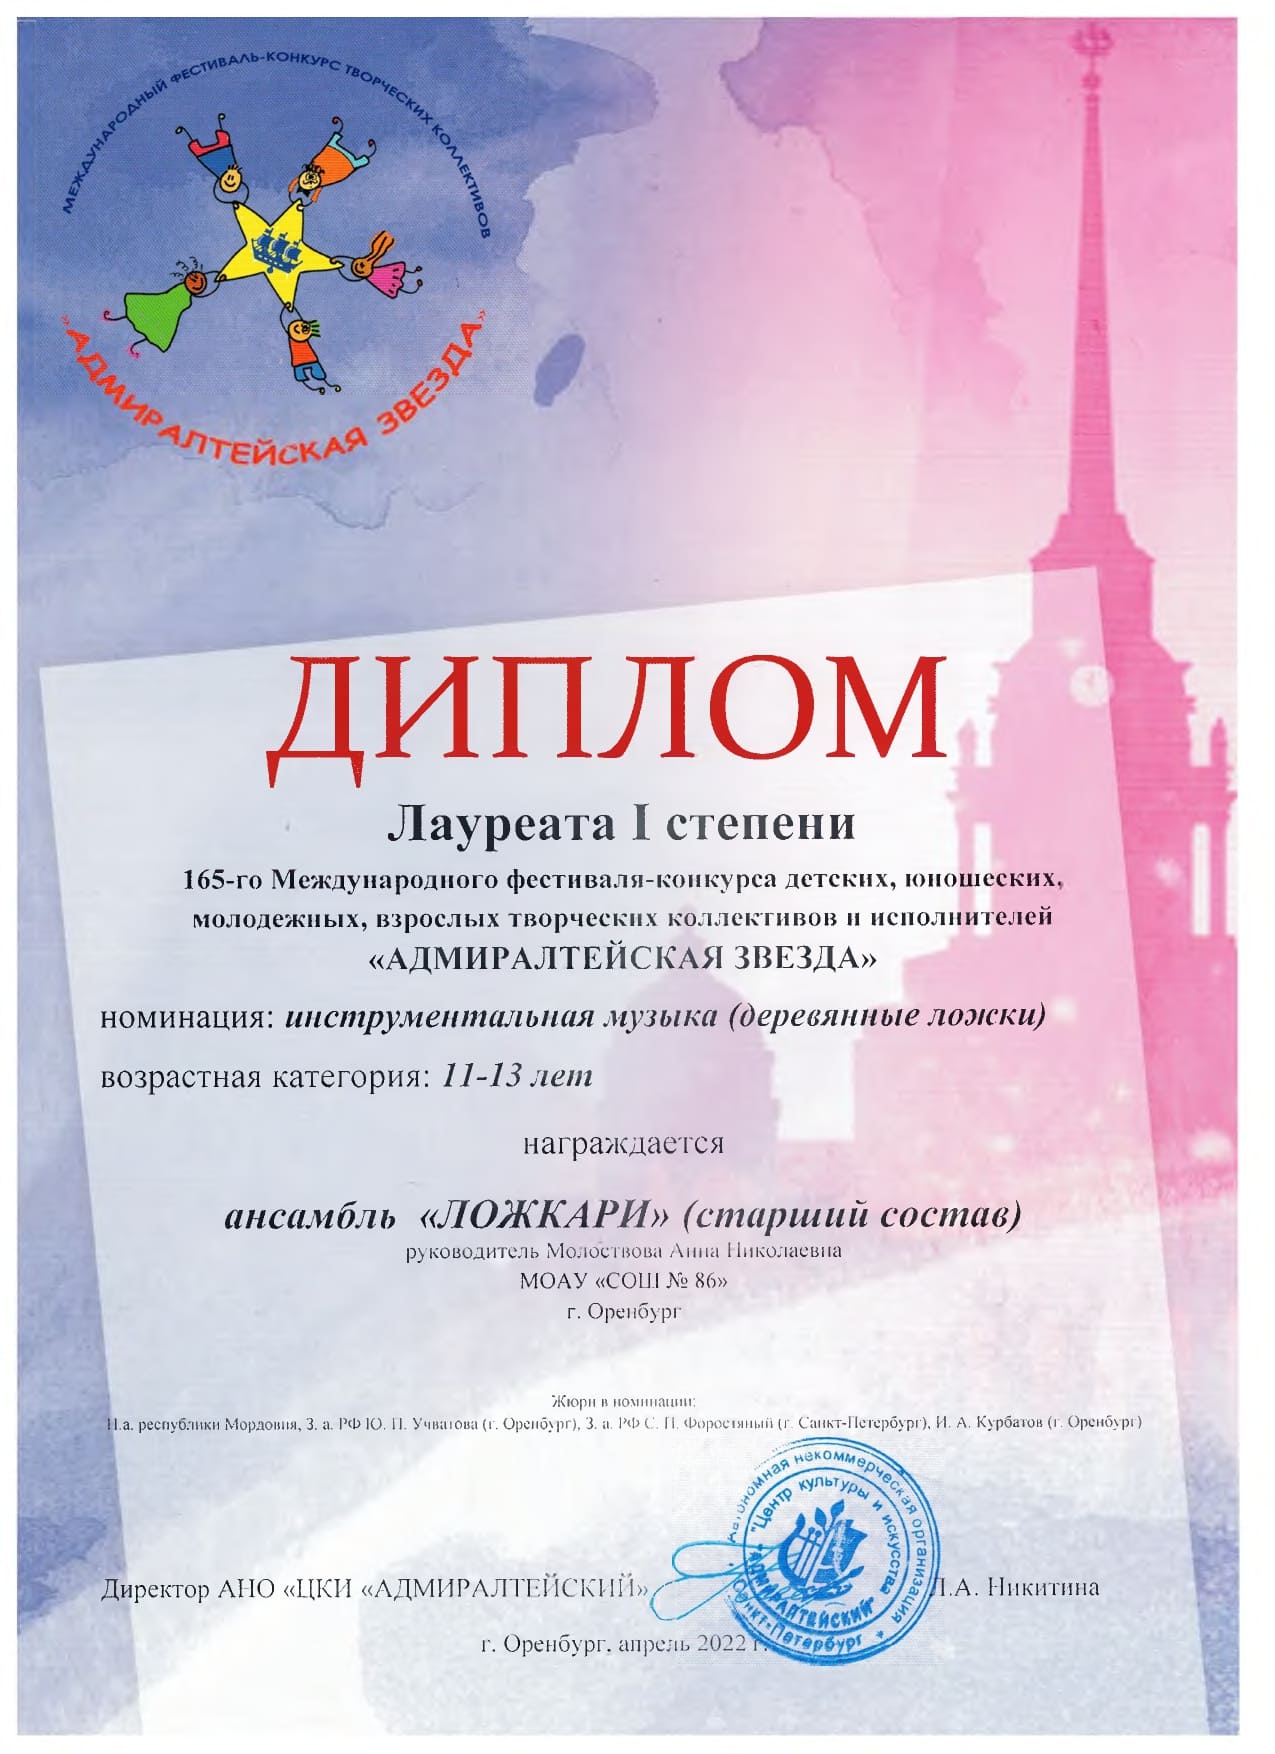 Диплом 1 степени 165-го Международного фестиваля-конкурса "Адмиралтейская звезда"